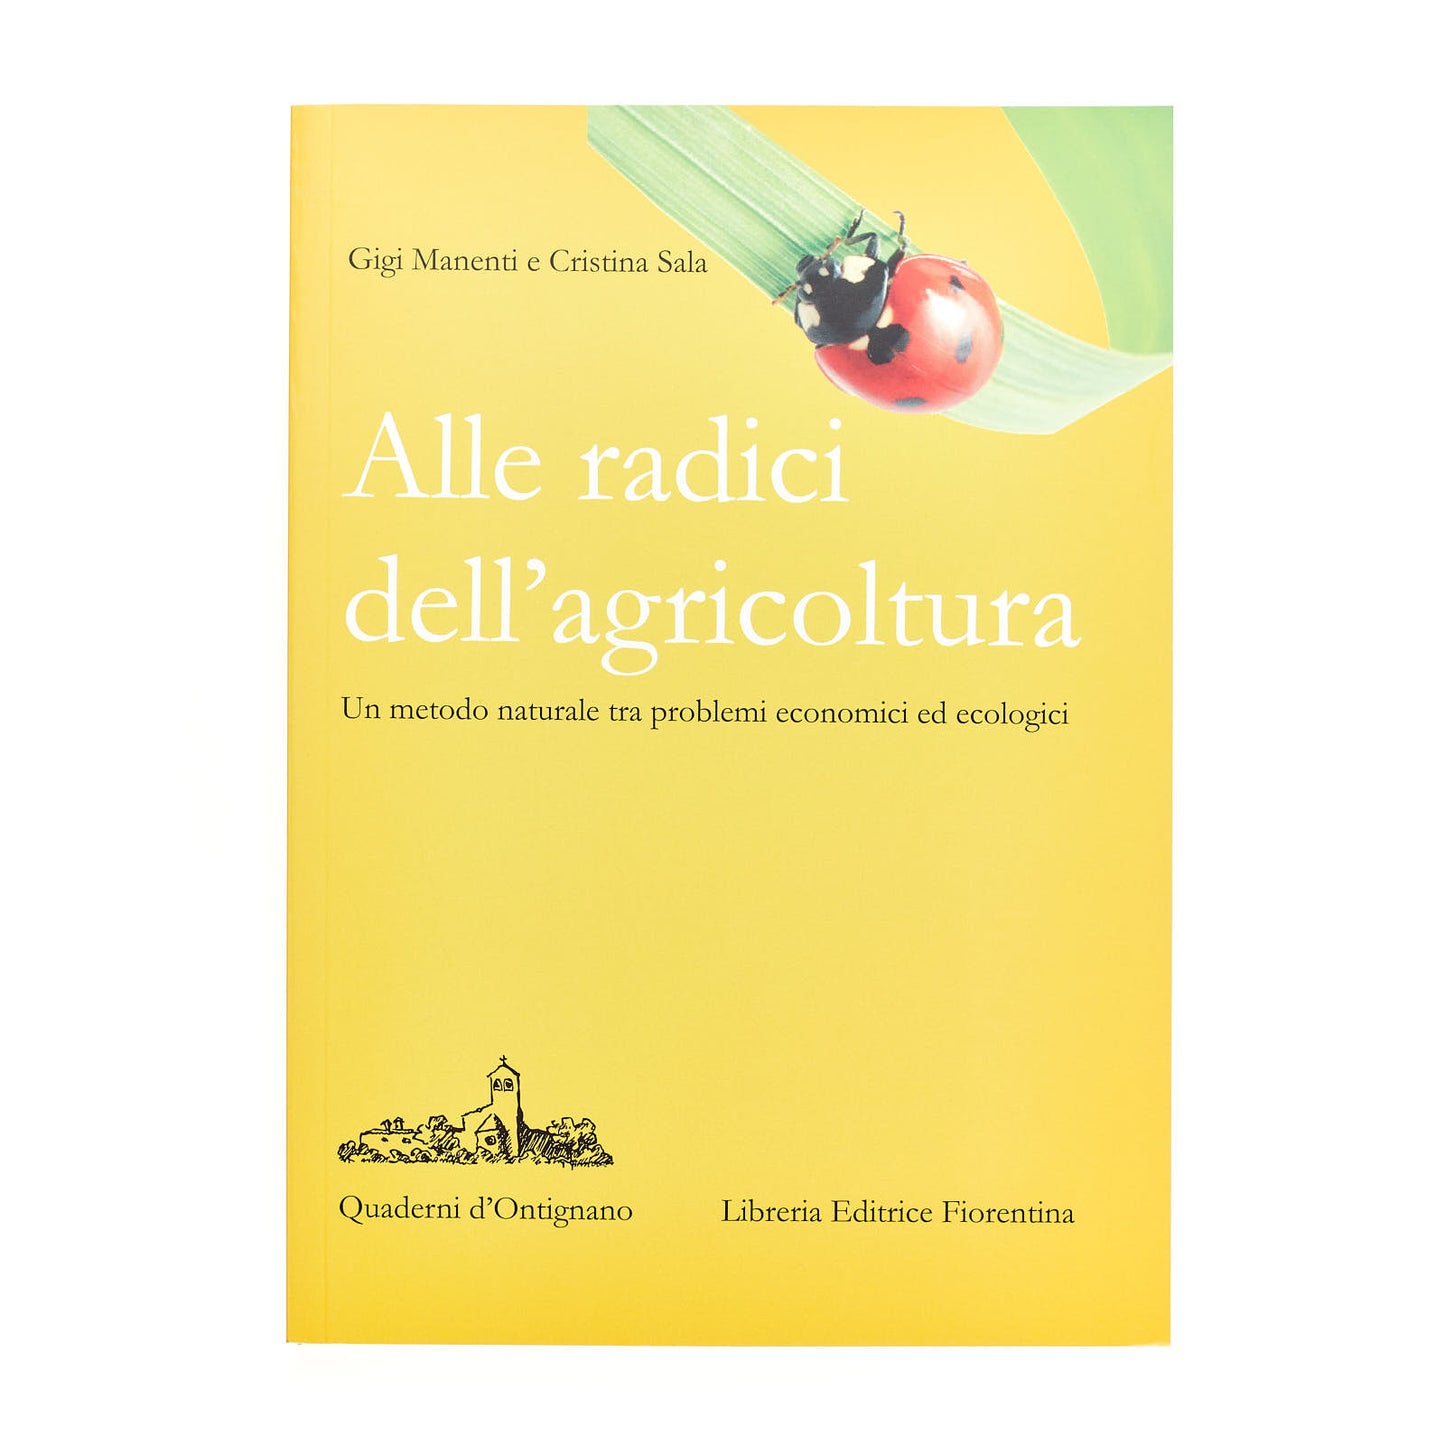 Alle radici dell'agricoltura (Gigi Manenti e Cristina Sala)